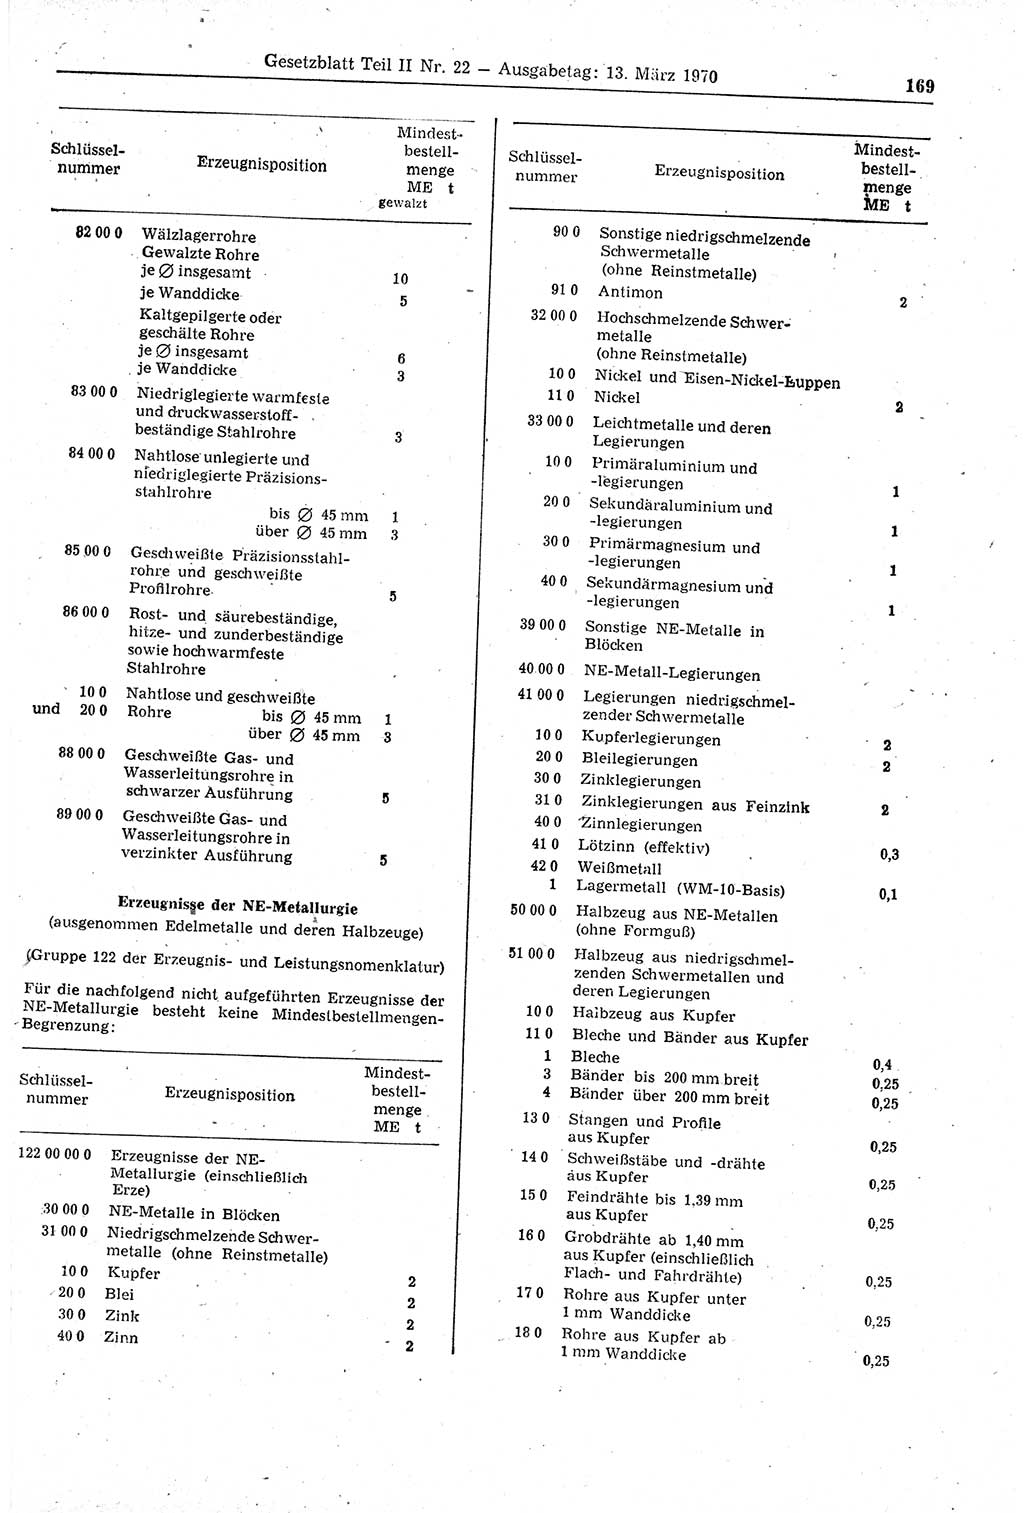 Gesetzblatt (GBl.) der Deutschen Demokratischen Republik (DDR) Teil ⅠⅠ 1970, Seite 169 (GBl. DDR ⅠⅠ 1970, S. 169)